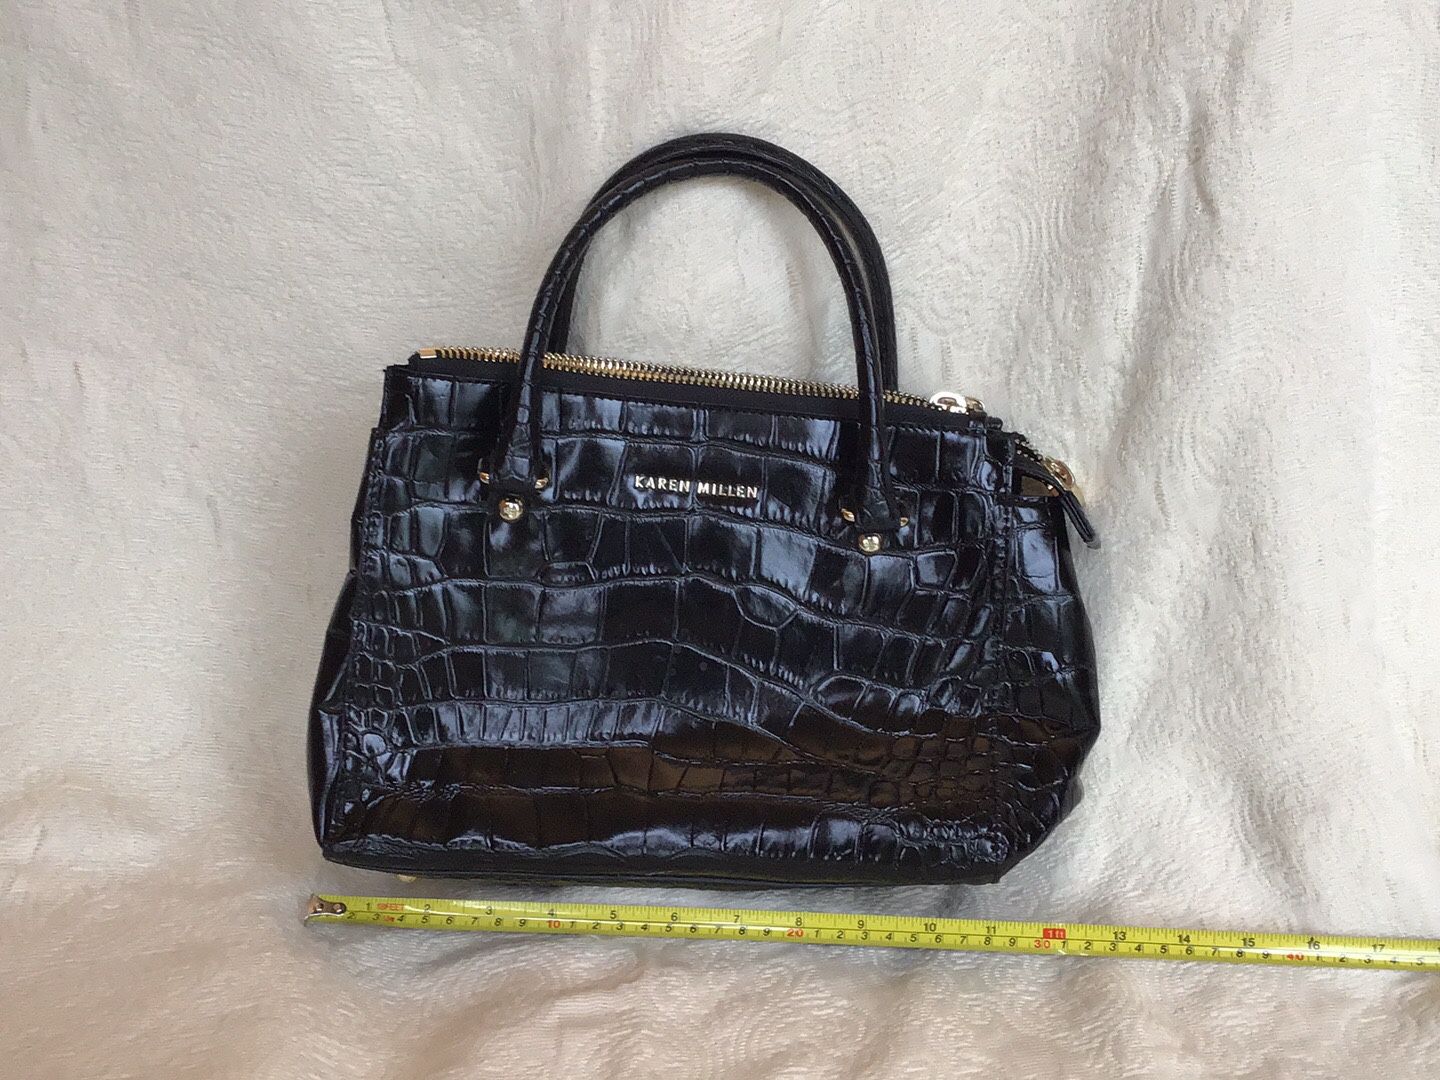 Karen Millen Black Leather Handbag